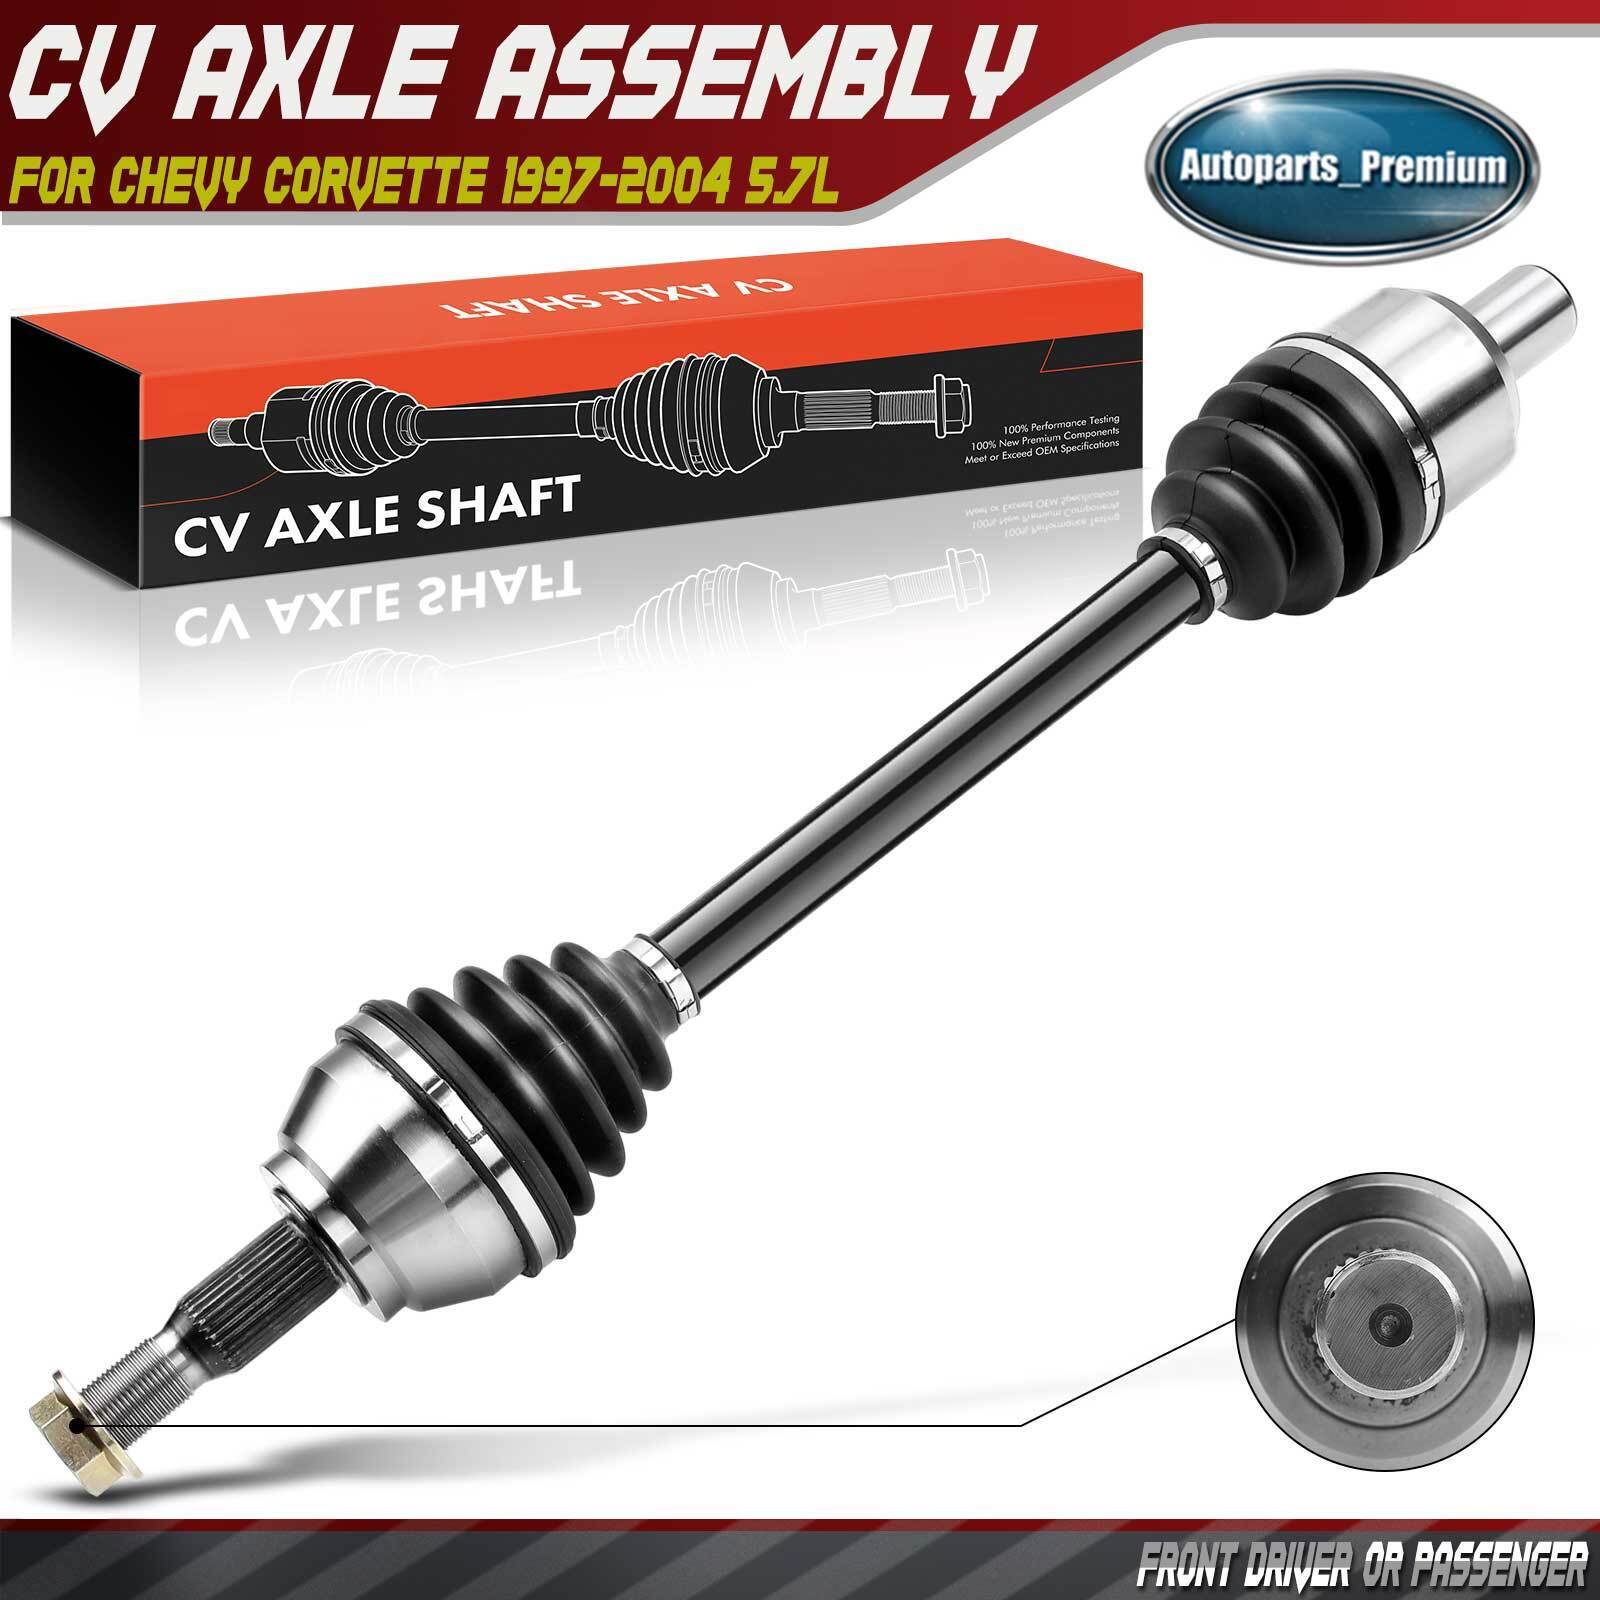 CV Axle Shaft Assembly for Chevrolet Corvette 1997-2004 5.7L Rear Left or Right